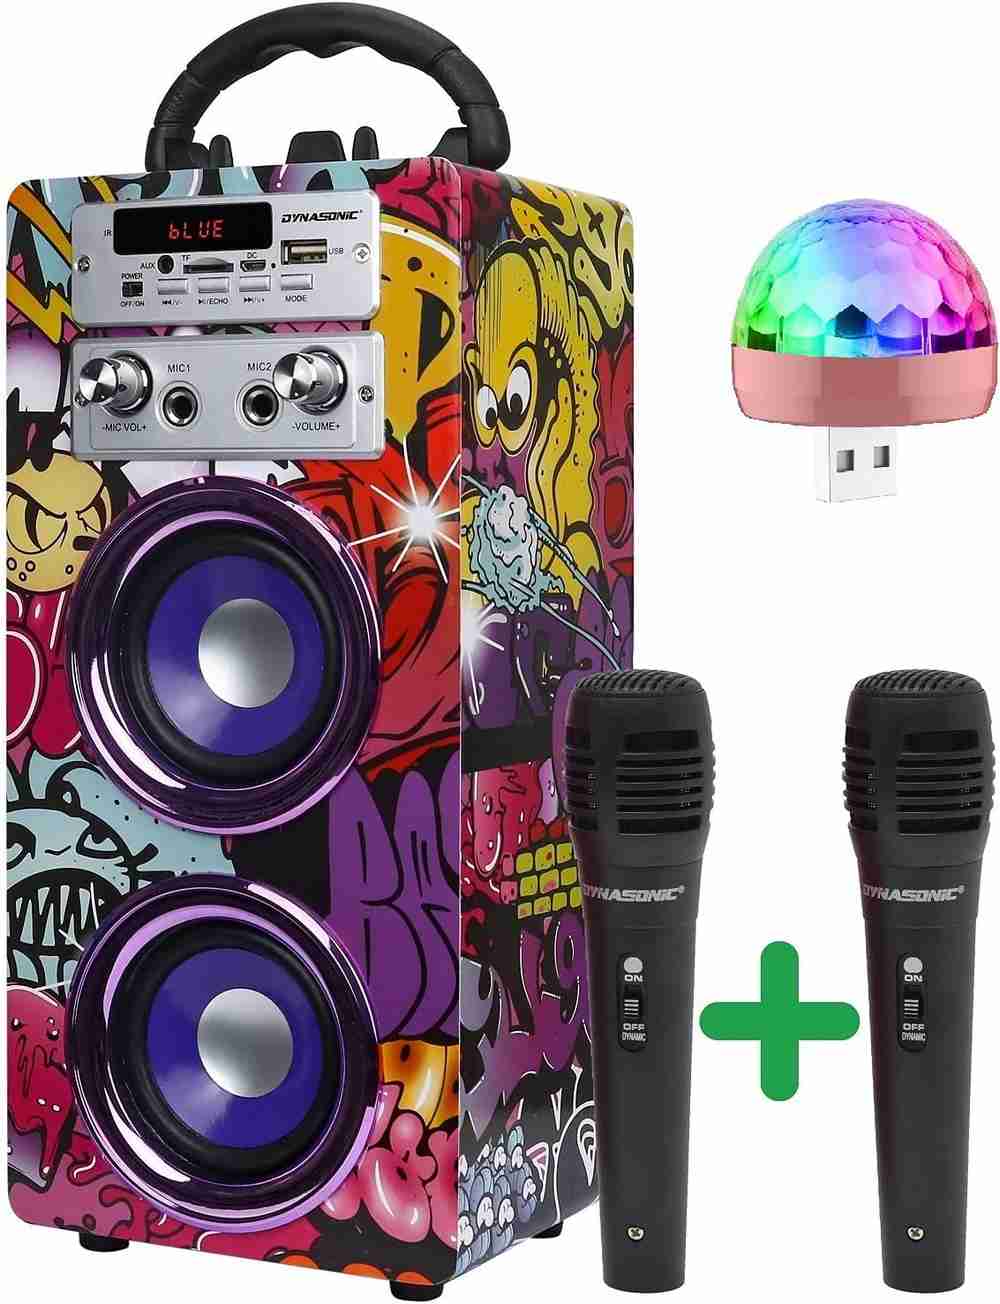 Máquina de karaoke con 2 micrófonos inalámbricos para adultos y niños,  altavoz Bluetooth portátil con luces de fiesta, radio FM, control remoto